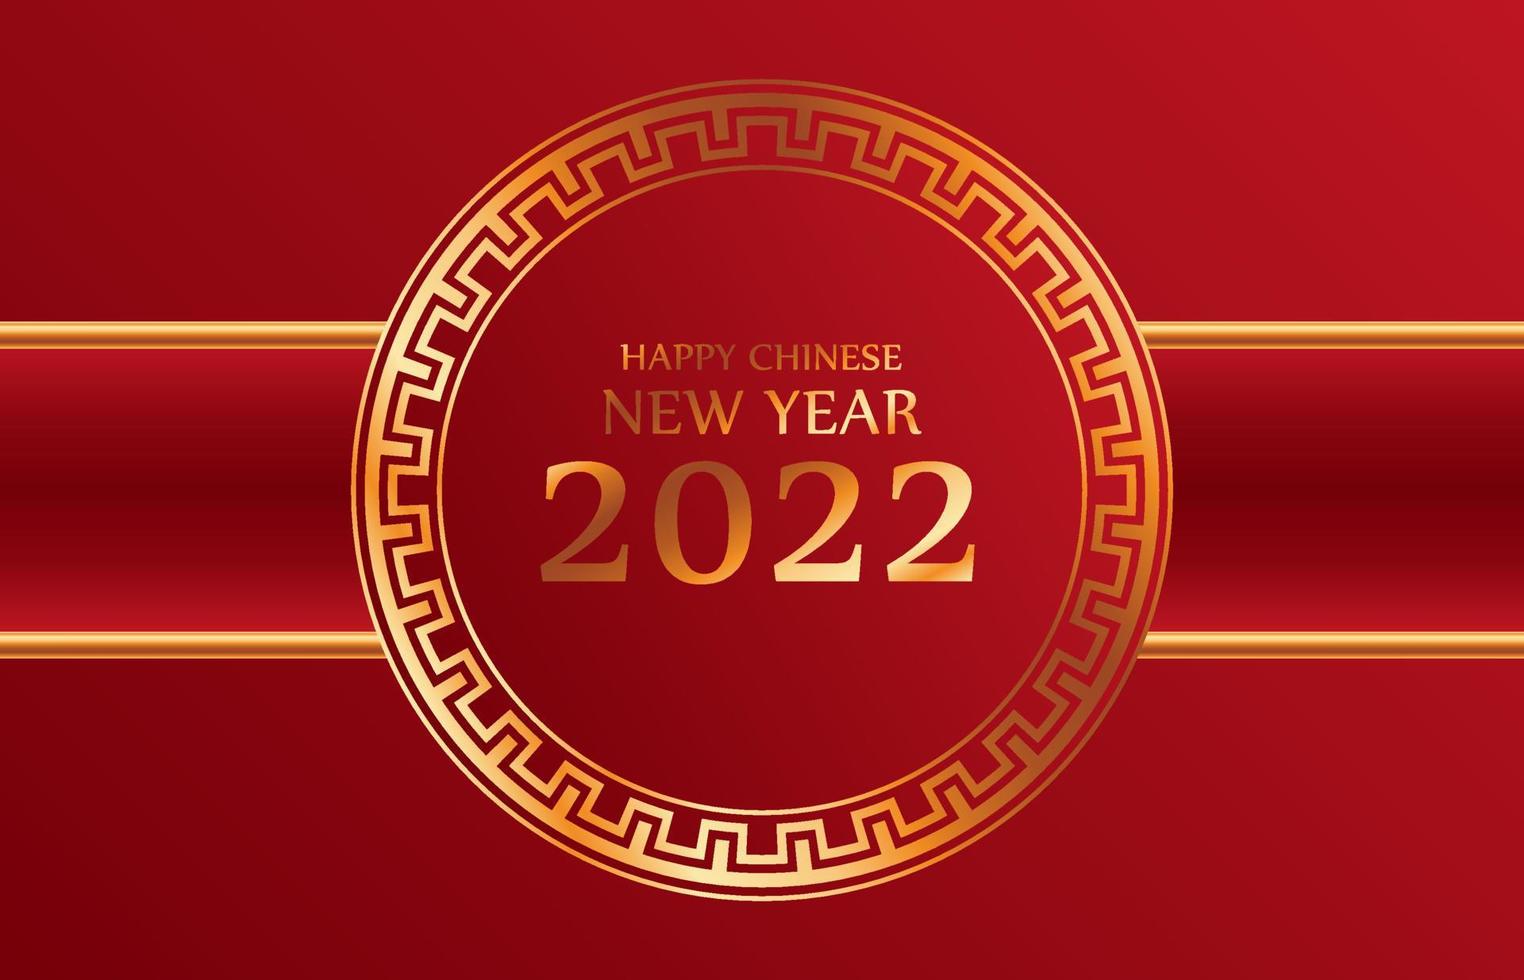 gott kinesiskt nytt år 2022 för fest och fester dekorativ klassisk festlig röd bakgrund och guldram med utrymme för meddelande isolerat vektor